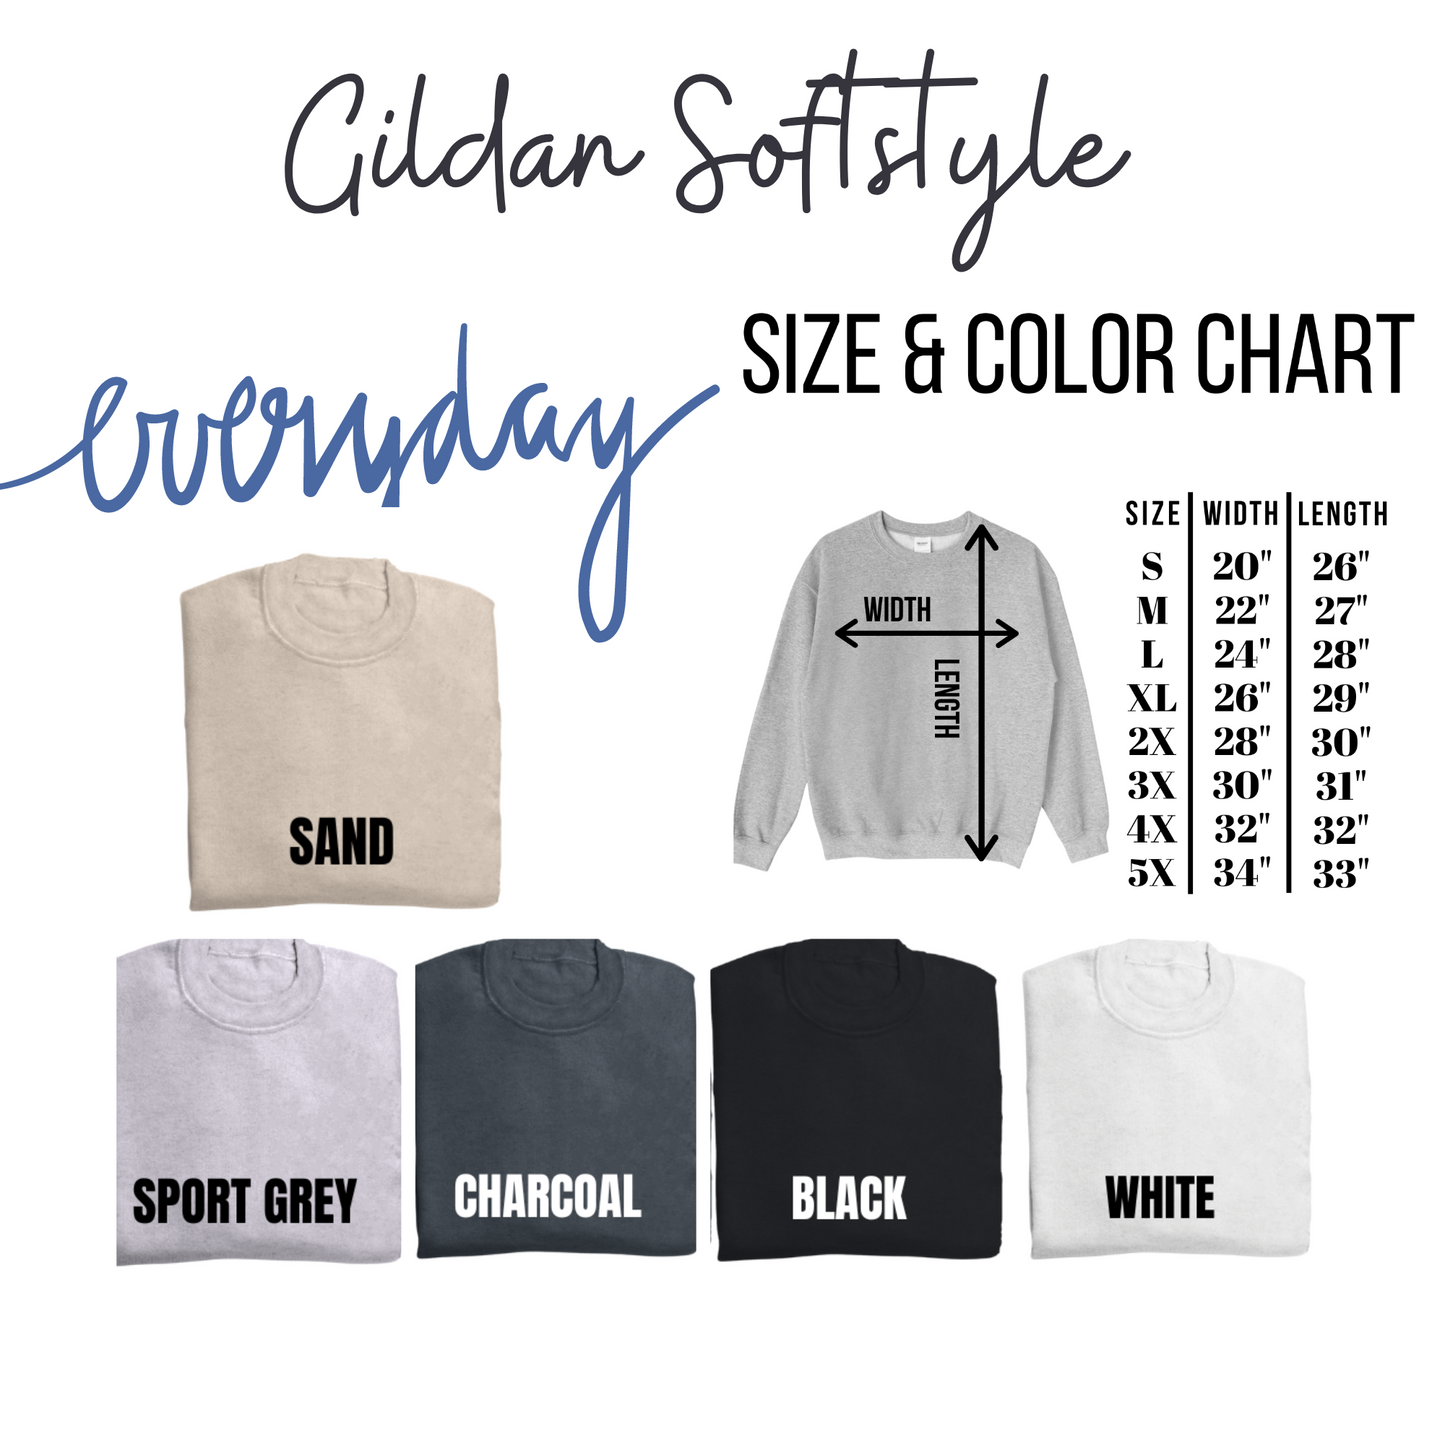 Bloom Rainbow Gildan Softstyle T-shirt or Sweatshirt